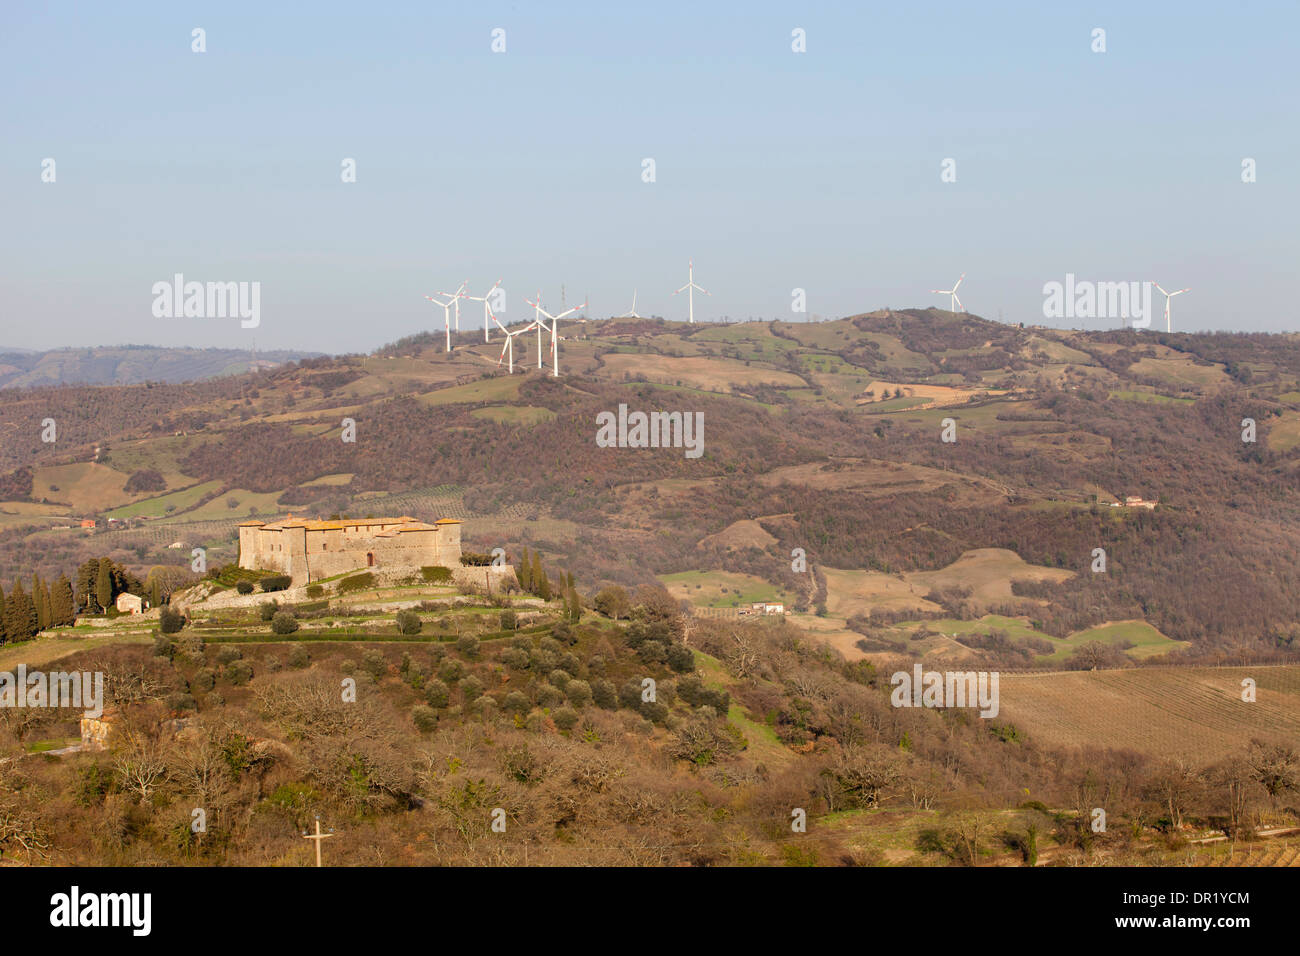 Le turbine eoliche, wind farm di scansano, CASTELLO DI MONTEPO, Scansano, provincia di Grosseto, Toscana, Italia, Europa Foto Stock